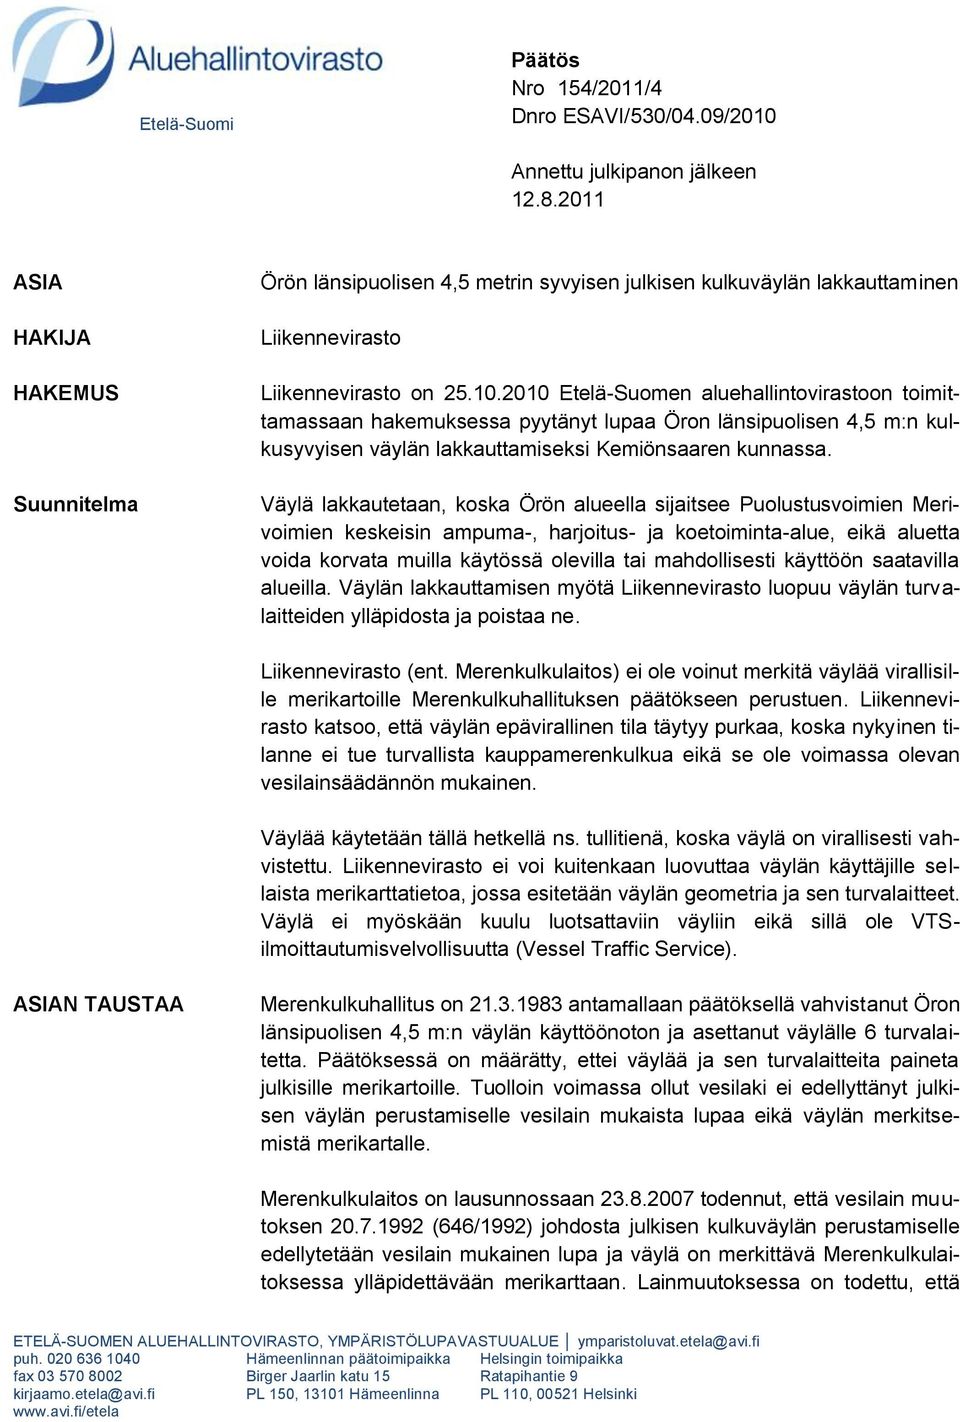 2010 Etelä-Suomen aluehallintovirastoon toimittamassaan hakemuksessa pyytänyt lupaa Öron länsipuolisen 4,5 m:n kulkusyvyisen väylän lakkauttamiseksi Kemiönsaaren kunnassa.